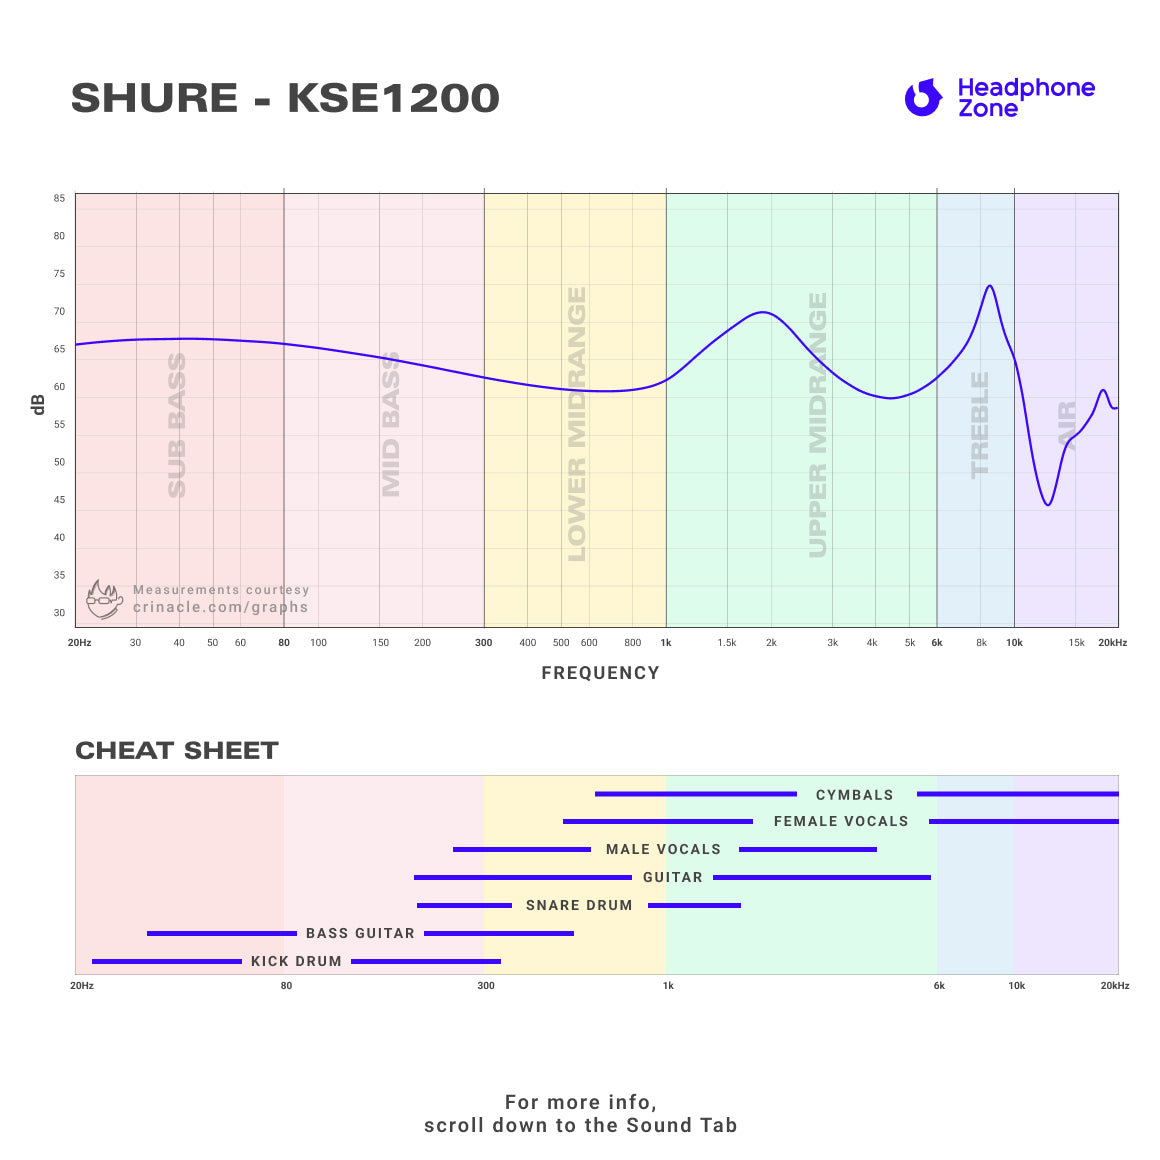 Shure - KSE1200